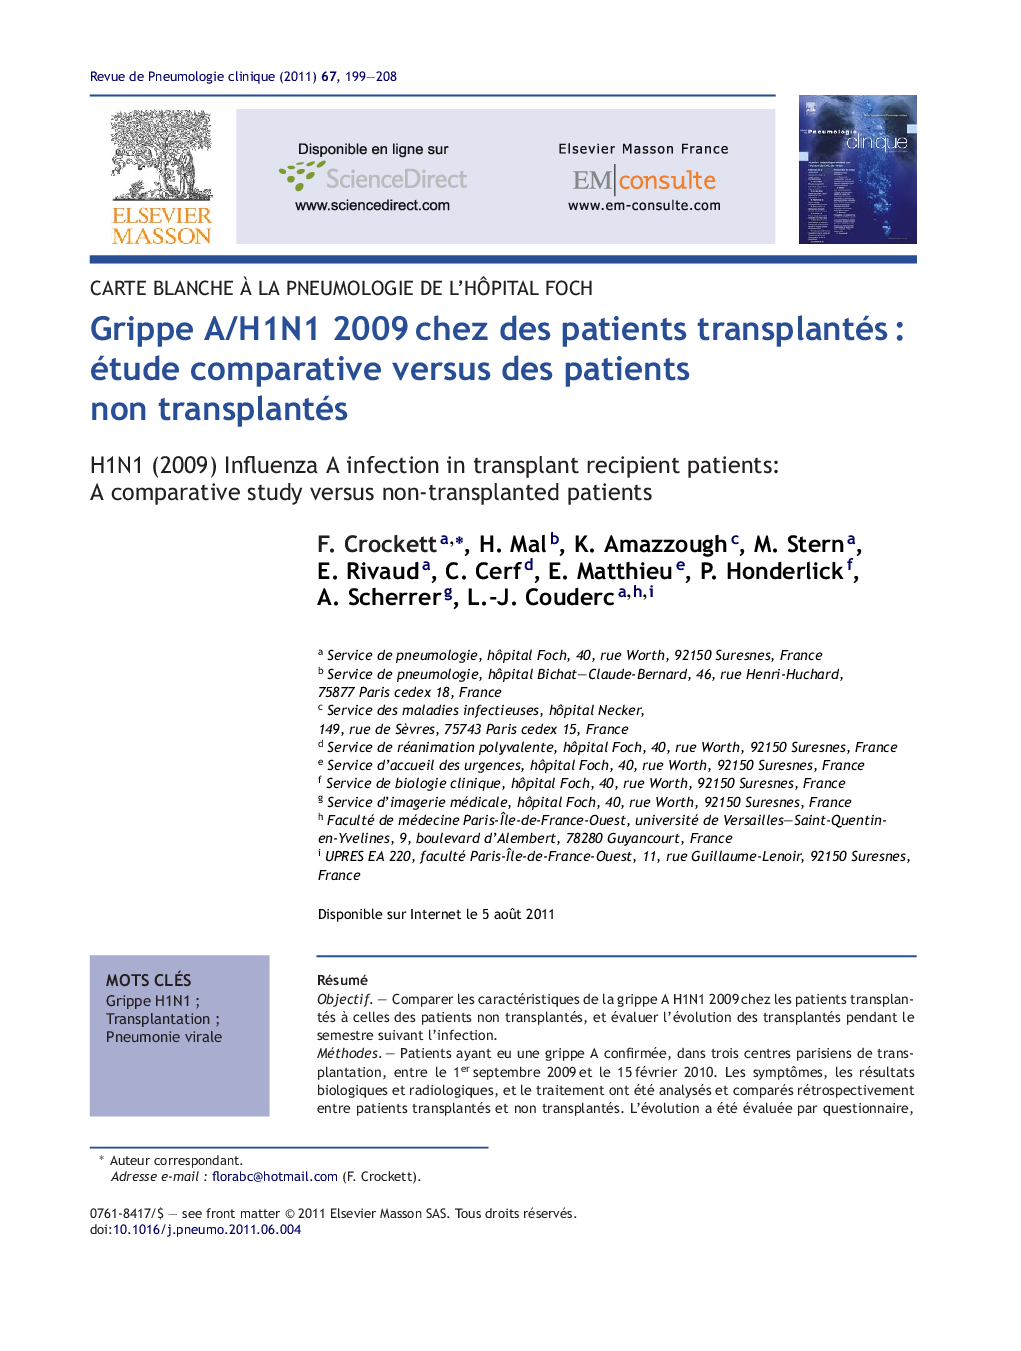 Grippe A/H1N1 2009Â chez des patients transplantésÂ : étude comparative versus des patients non transplantés